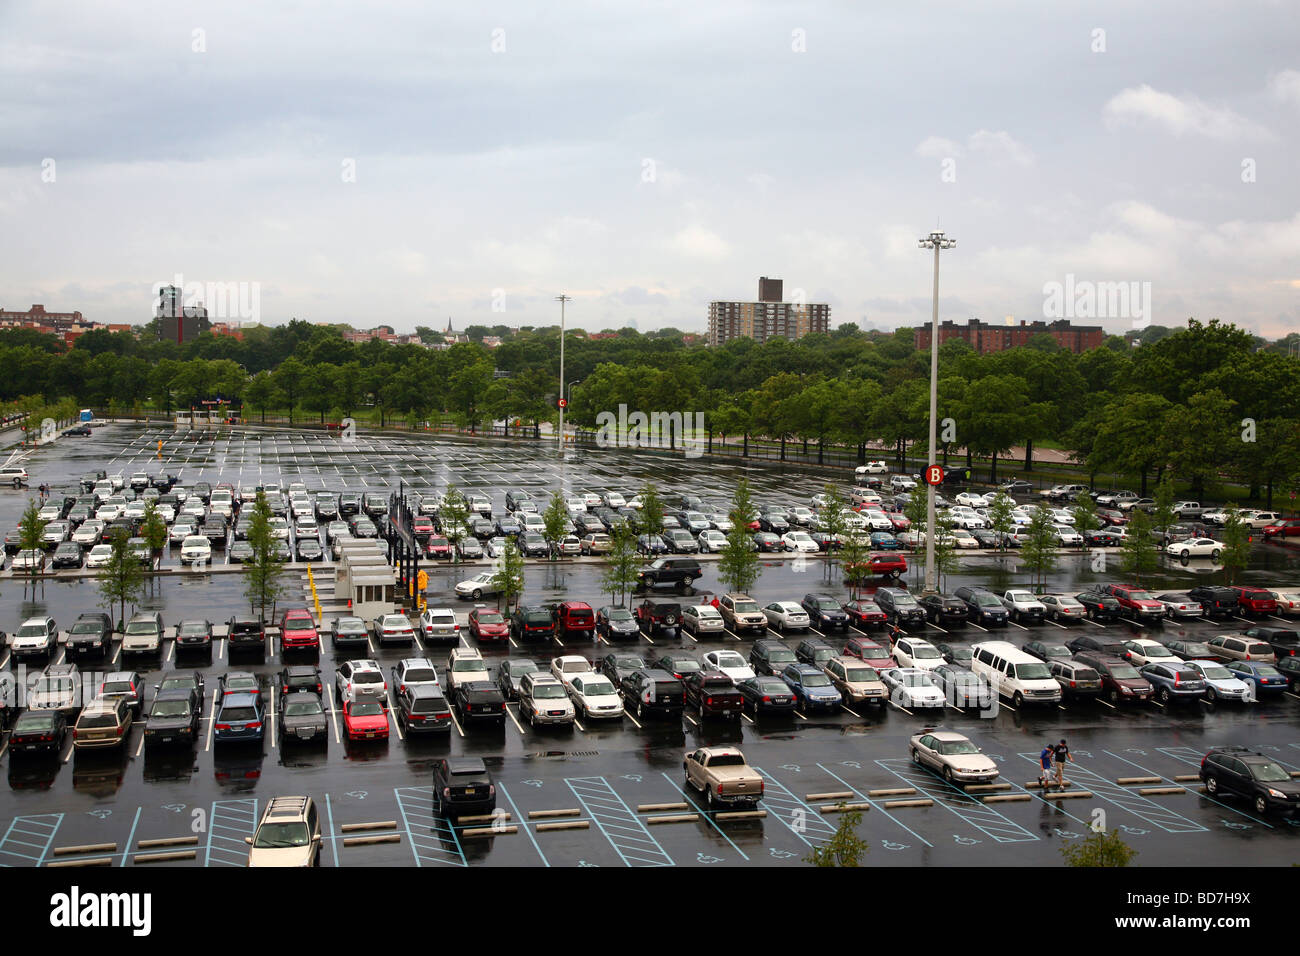 Pluie sur un terrain de stationnement Citi remplissant avant un match, Queens, NY, USA Banque D'Images